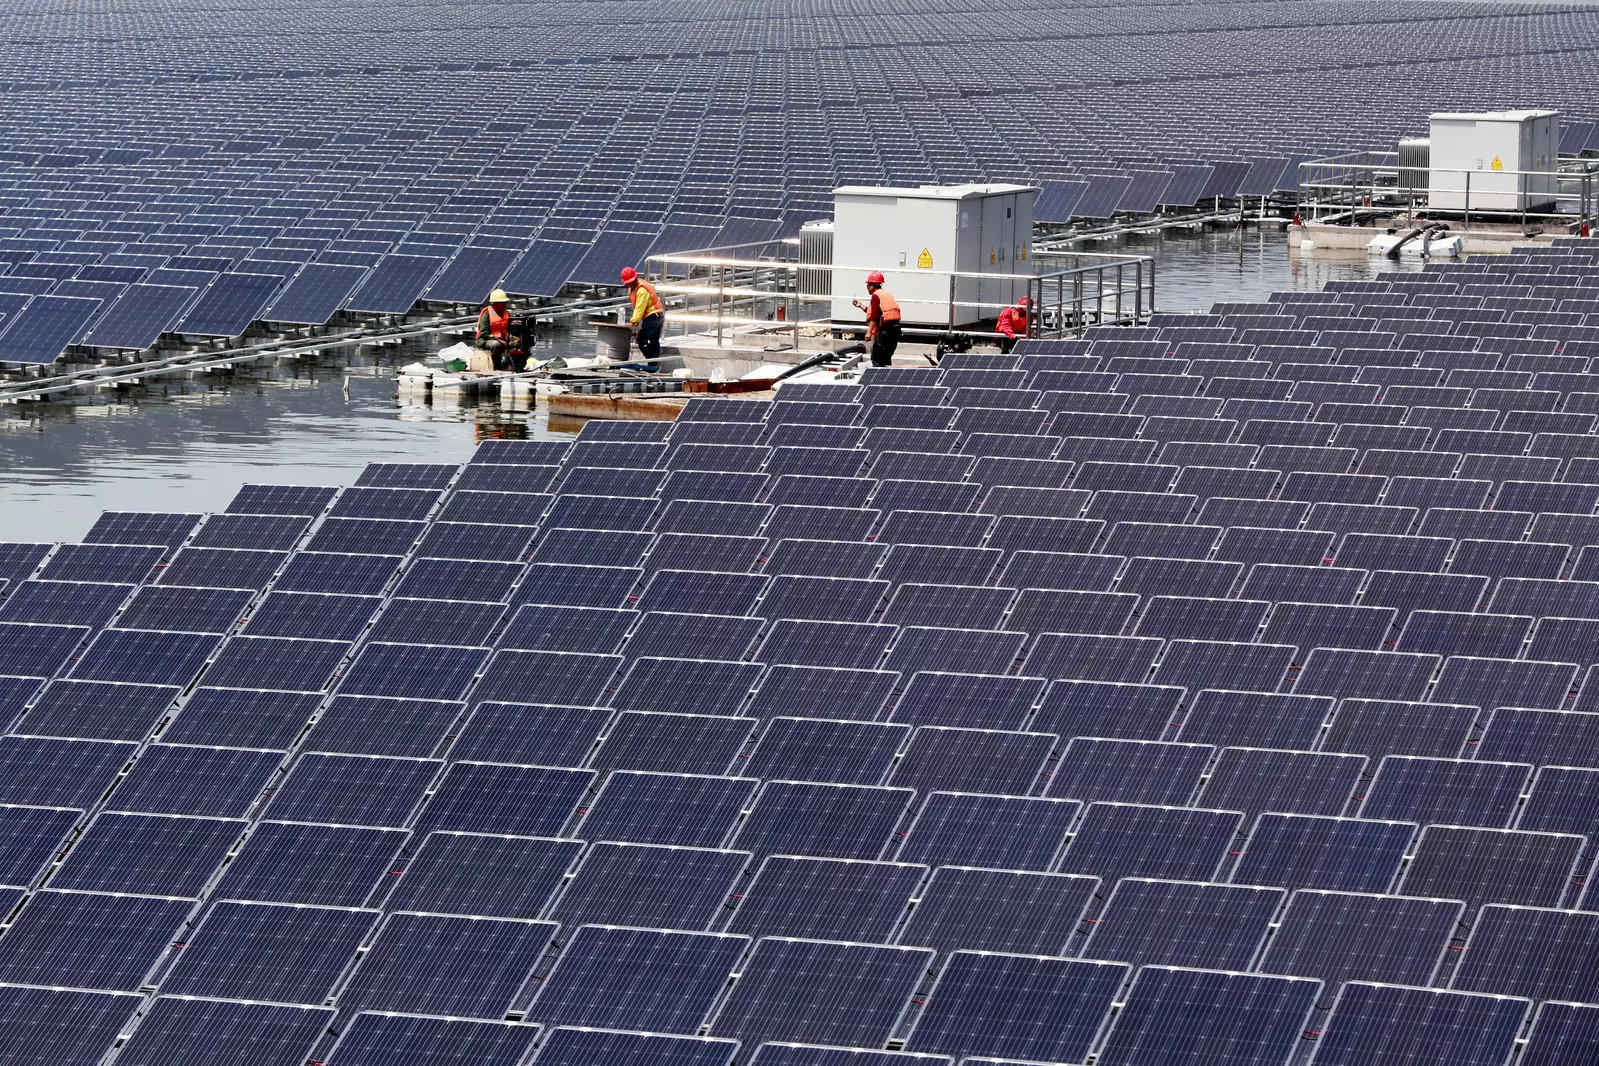 Sunseap menandatangani MOU untuk mengembangkan pembangkit listrik tenaga surya skala besar di Kepulauan Riau Indonesia